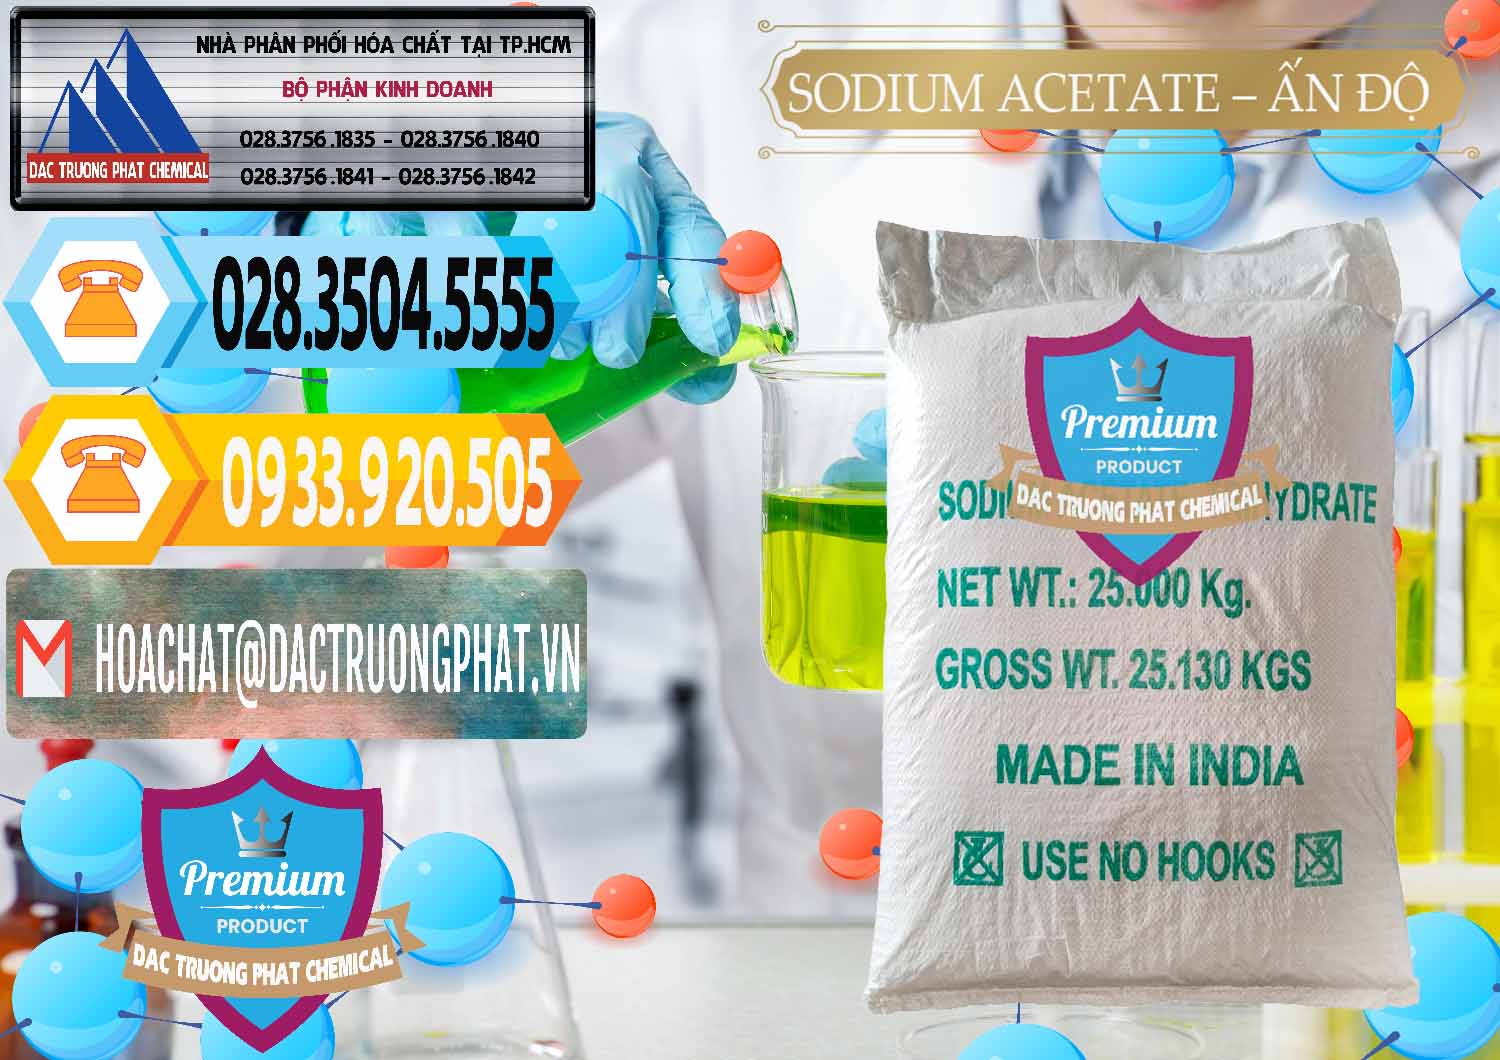 Kinh doanh _ bán Sodium Acetate - Natri Acetate Ấn Độ India - 0133 - Chuyên phân phối & cung cấp hóa chất tại TP.HCM - hoachattayrua.net